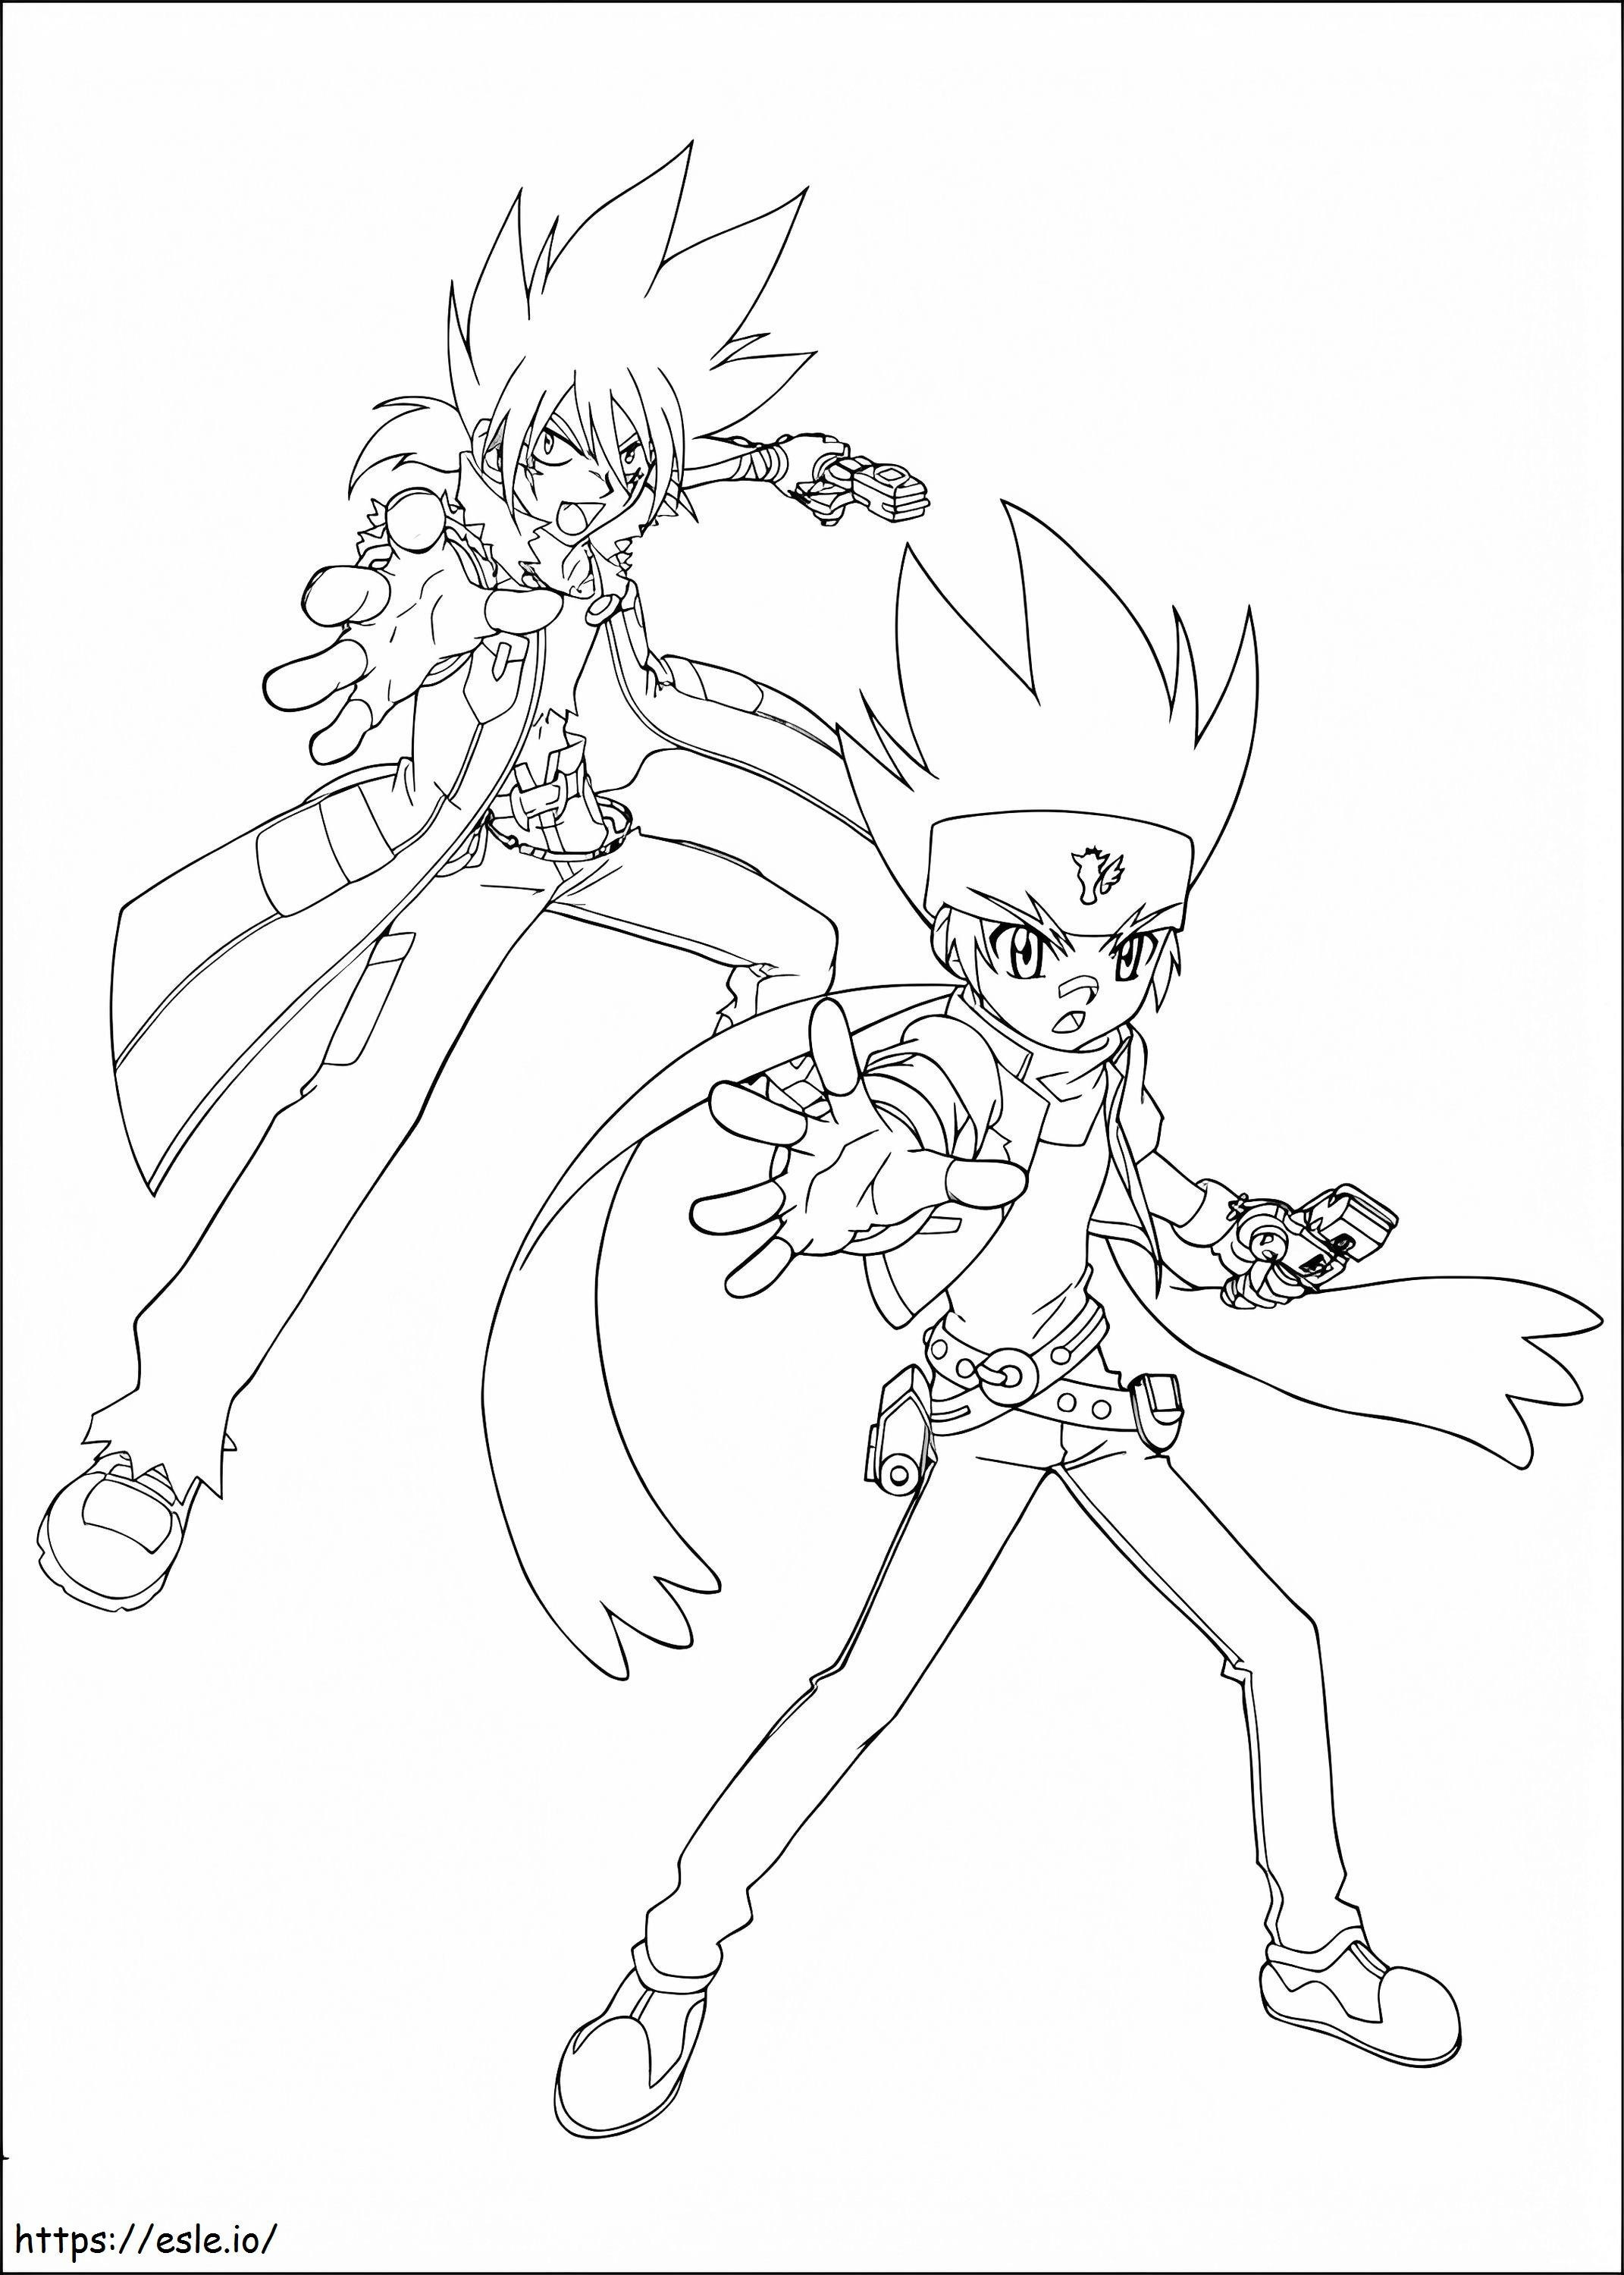 Gingka And Kyoya A4 coloring page